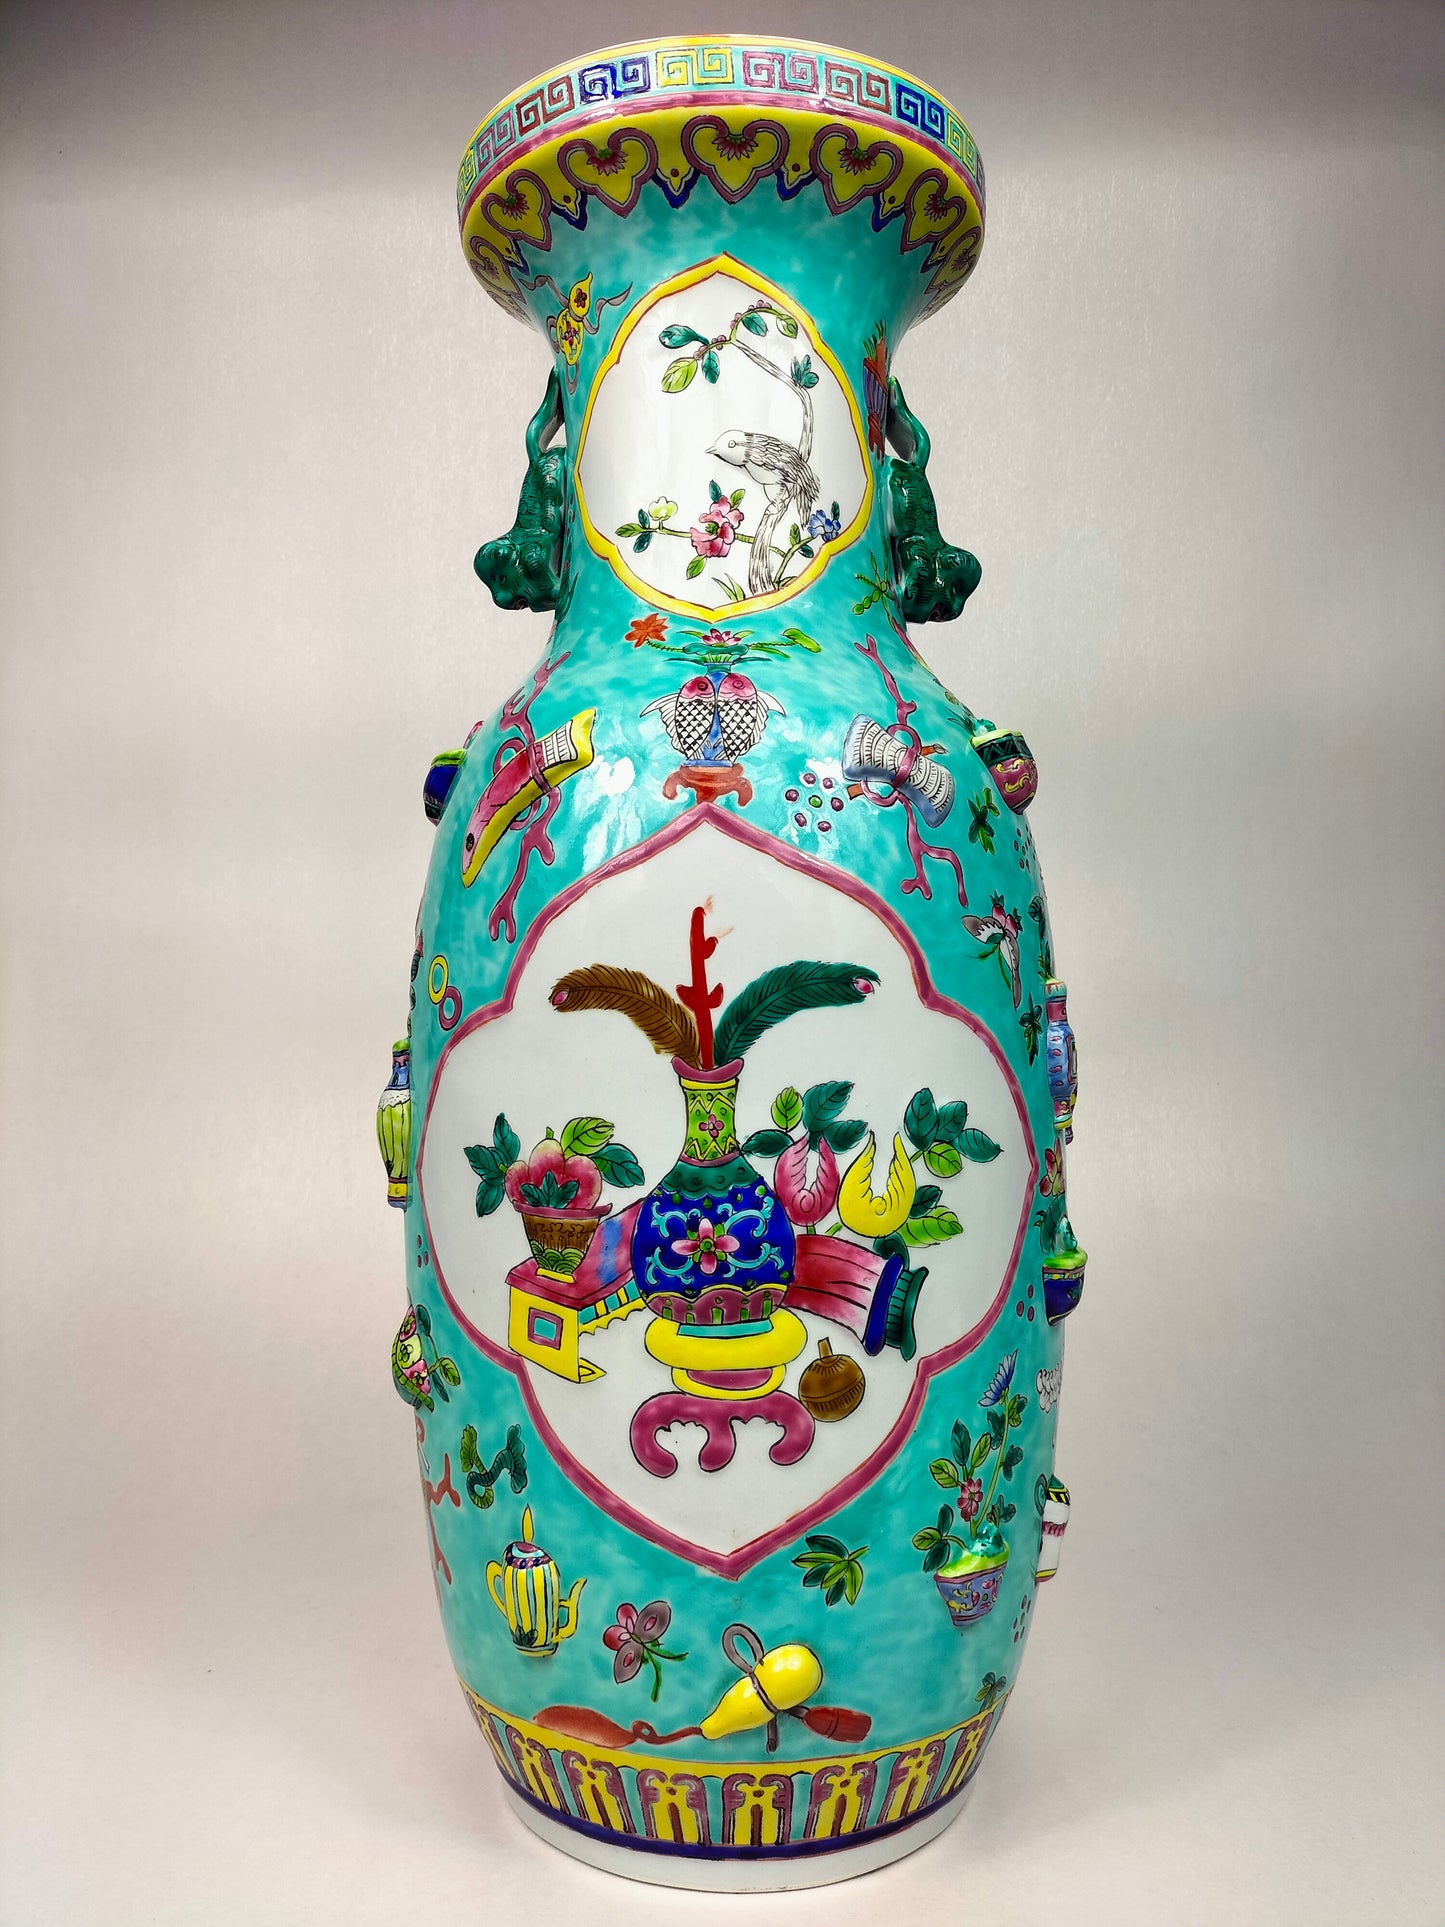 Bình hoa hồng gia đình màu ngọc lam lớn của Trung Quốc được trang trí bằng đồ cổ // thế kỷ 20